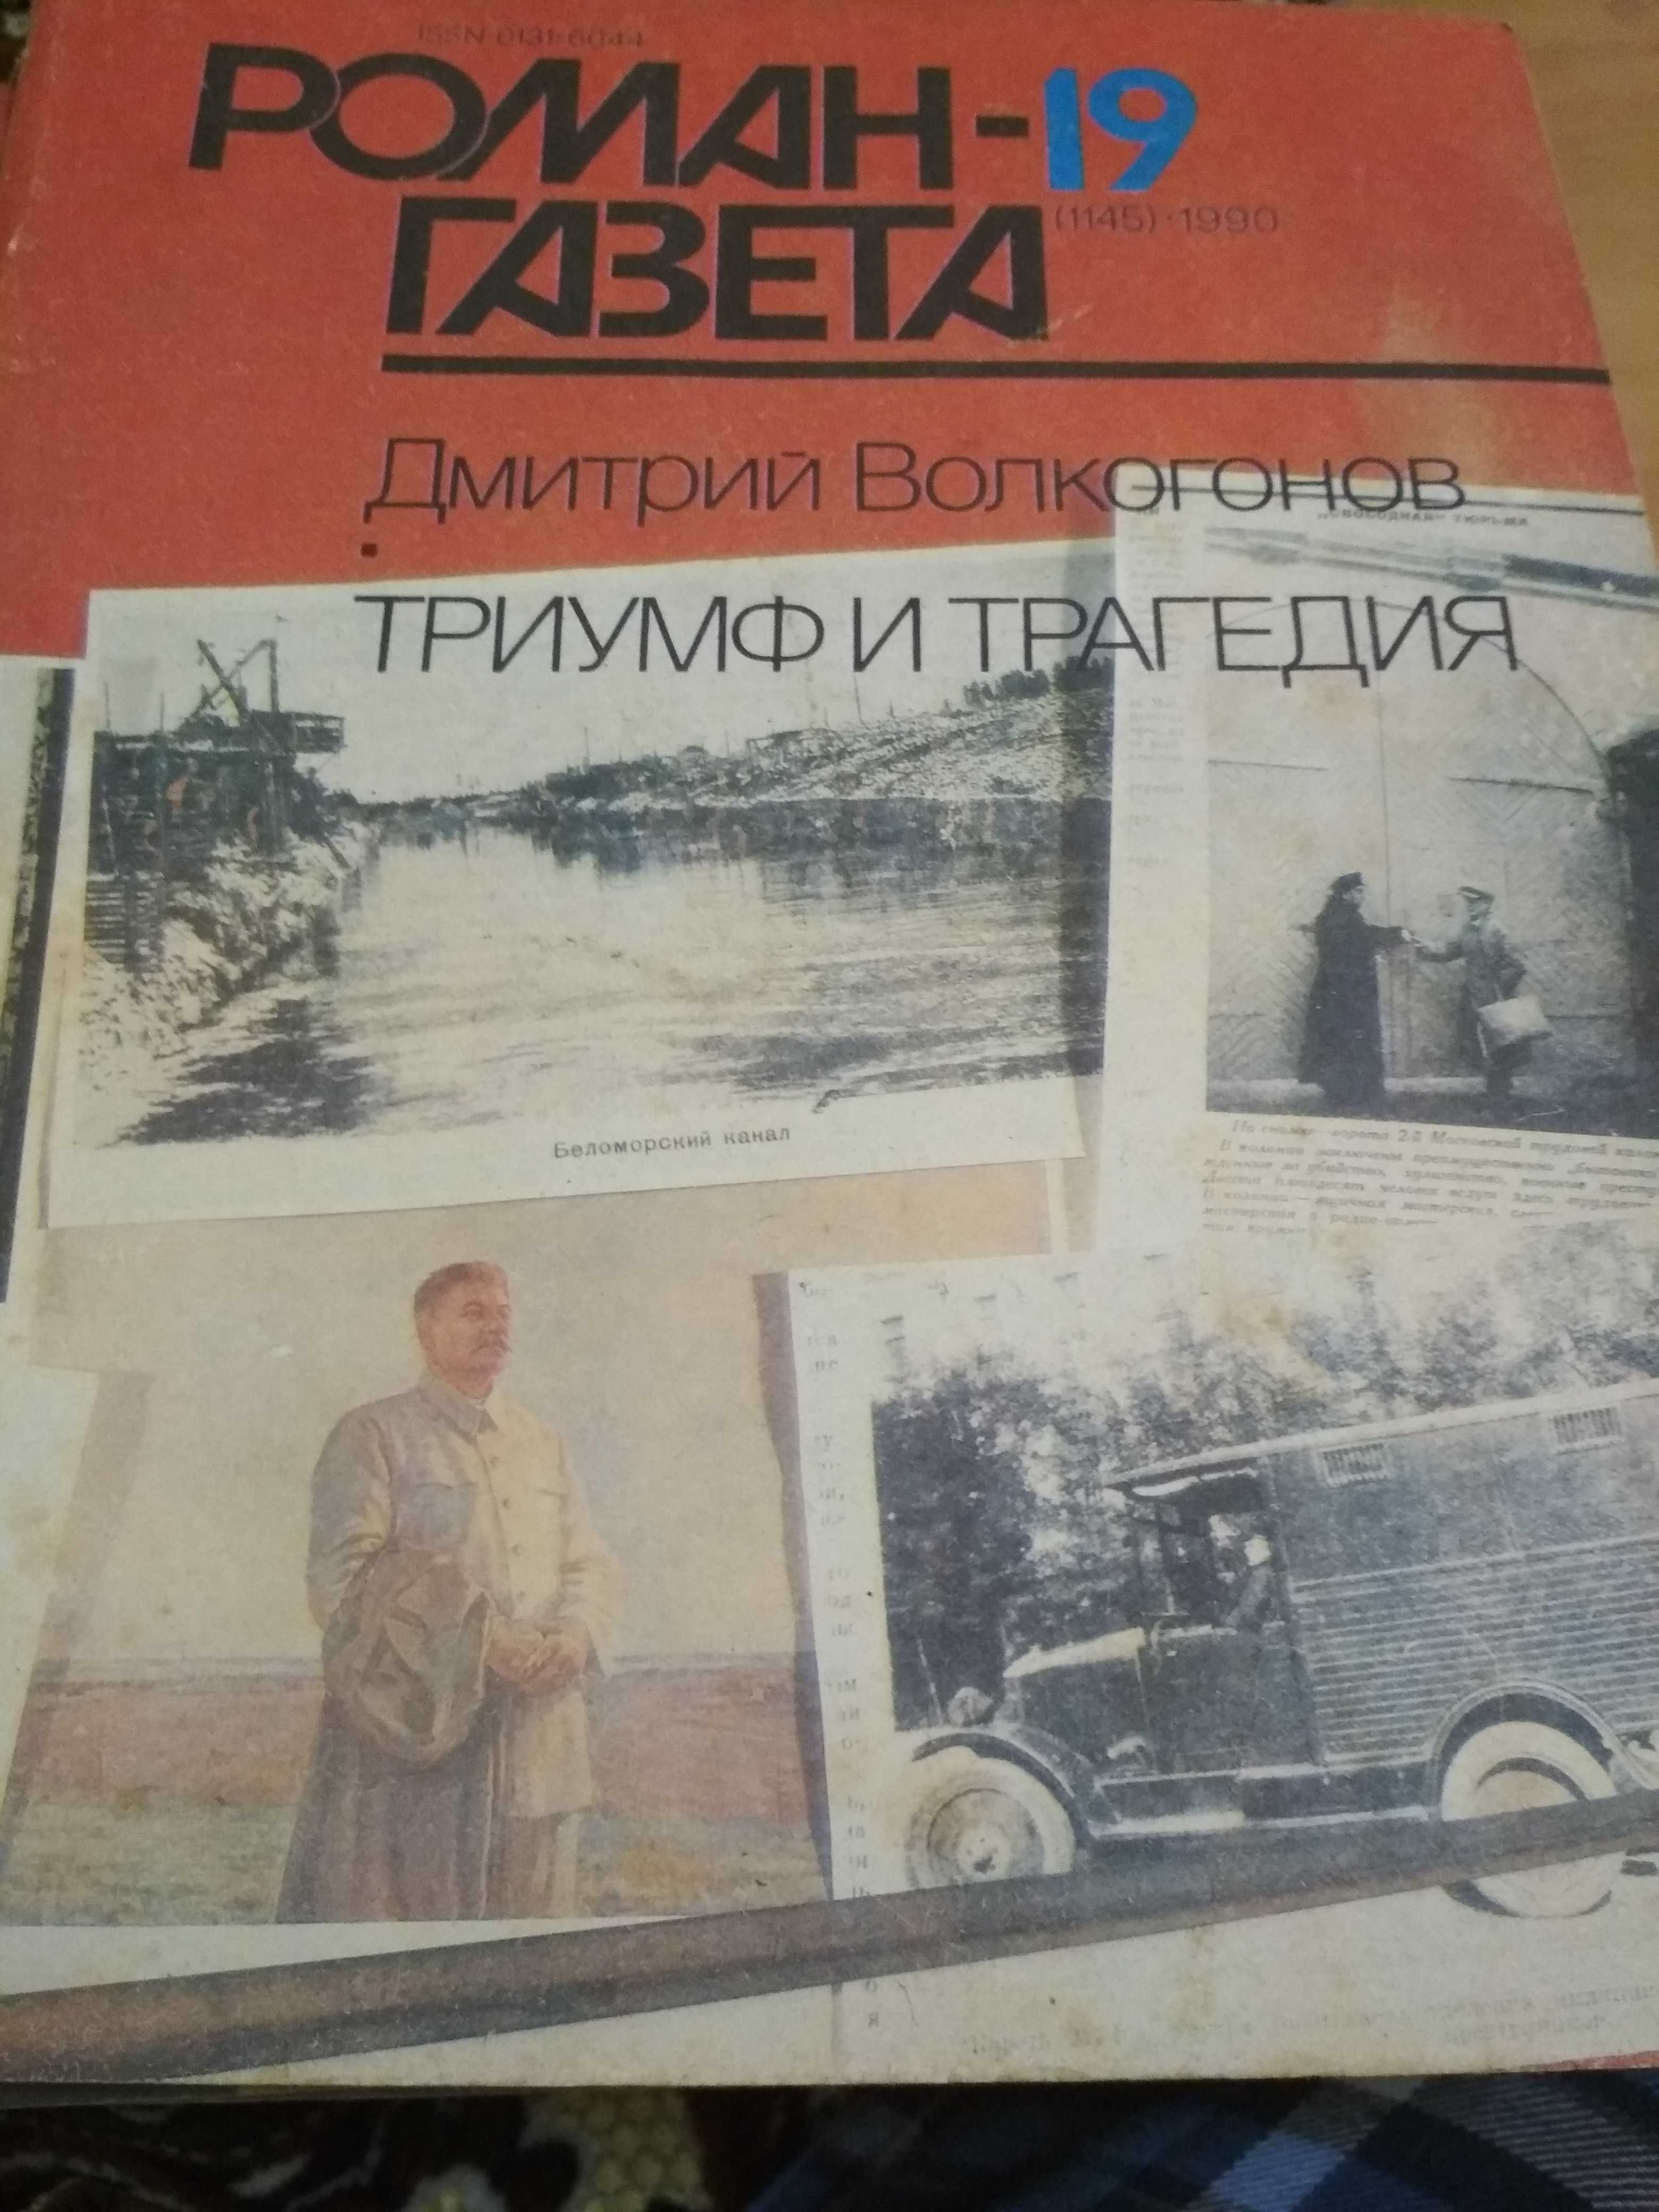 Роман-газеты, СССР, распродажа, 50 грн.